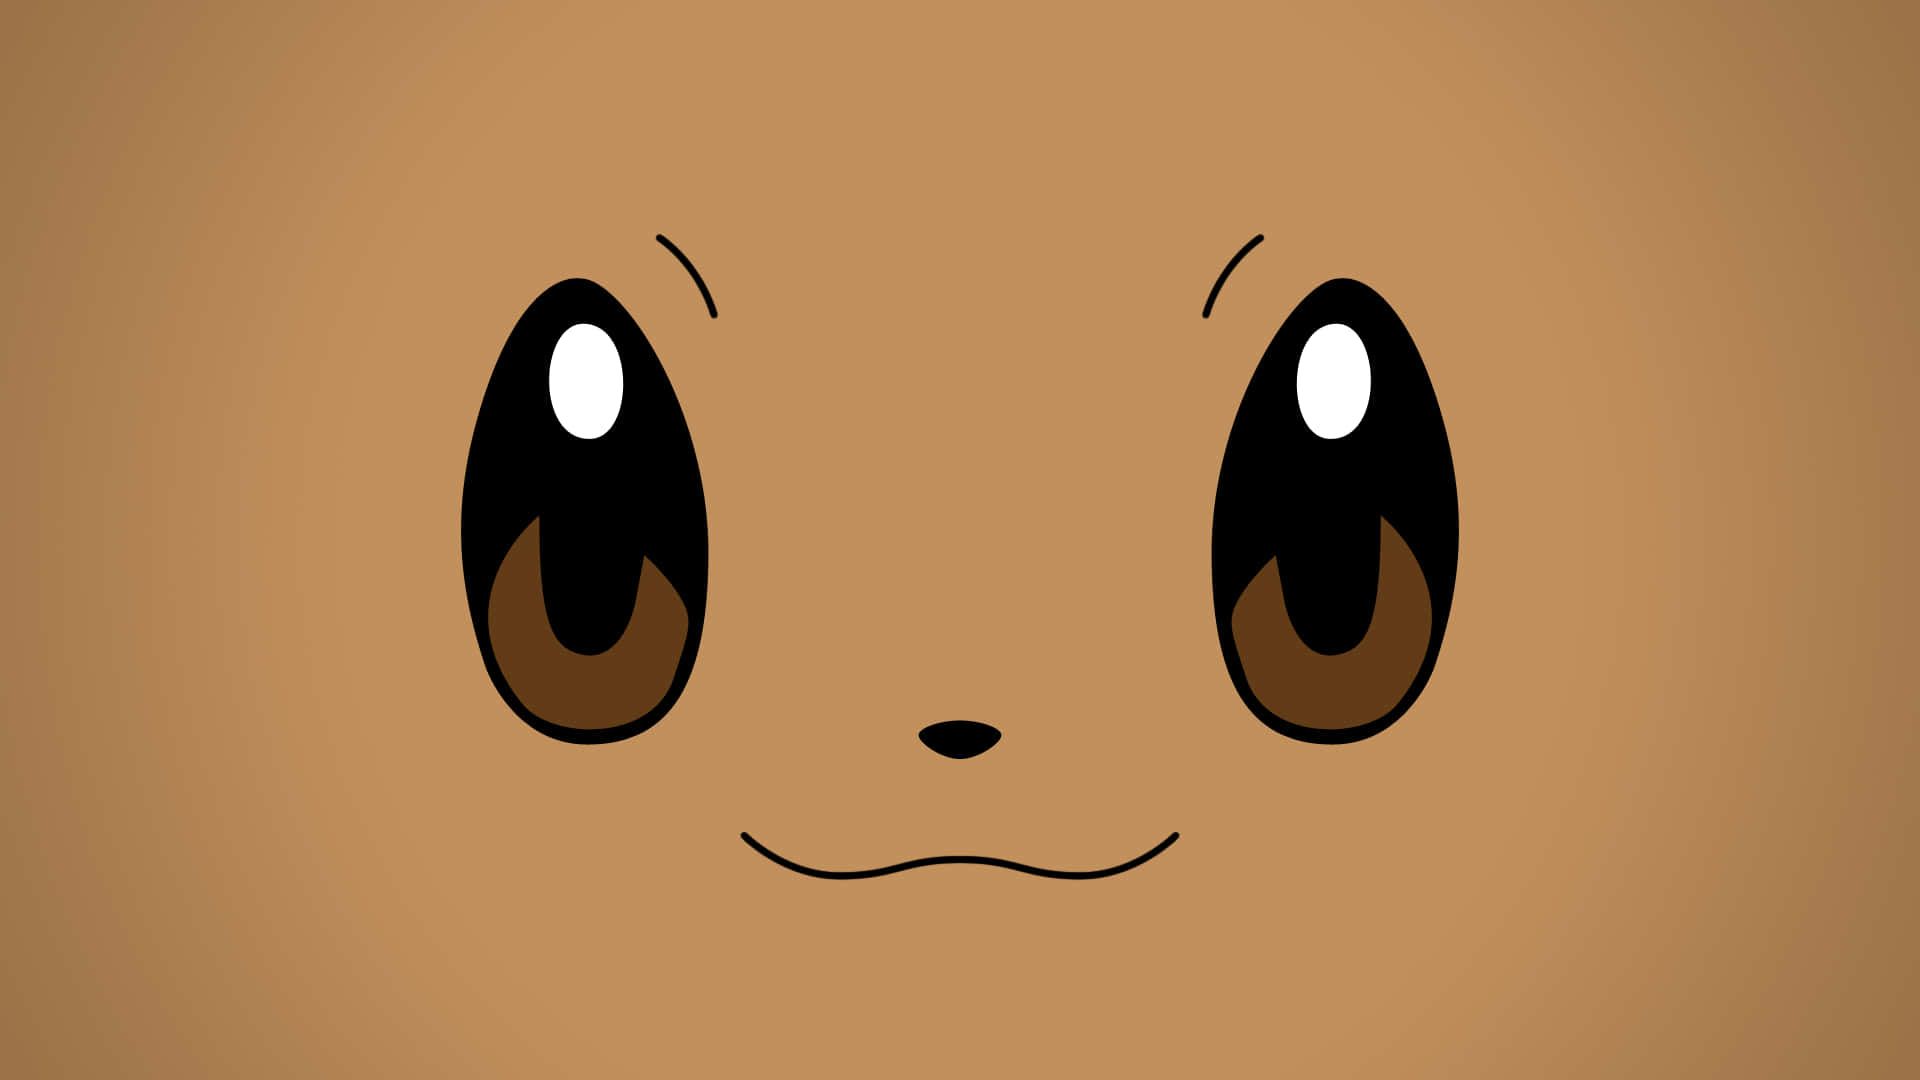 Lindaimagen De Eevee Pokemon Con Su Cara En Primer Plano. Fondo de pantalla